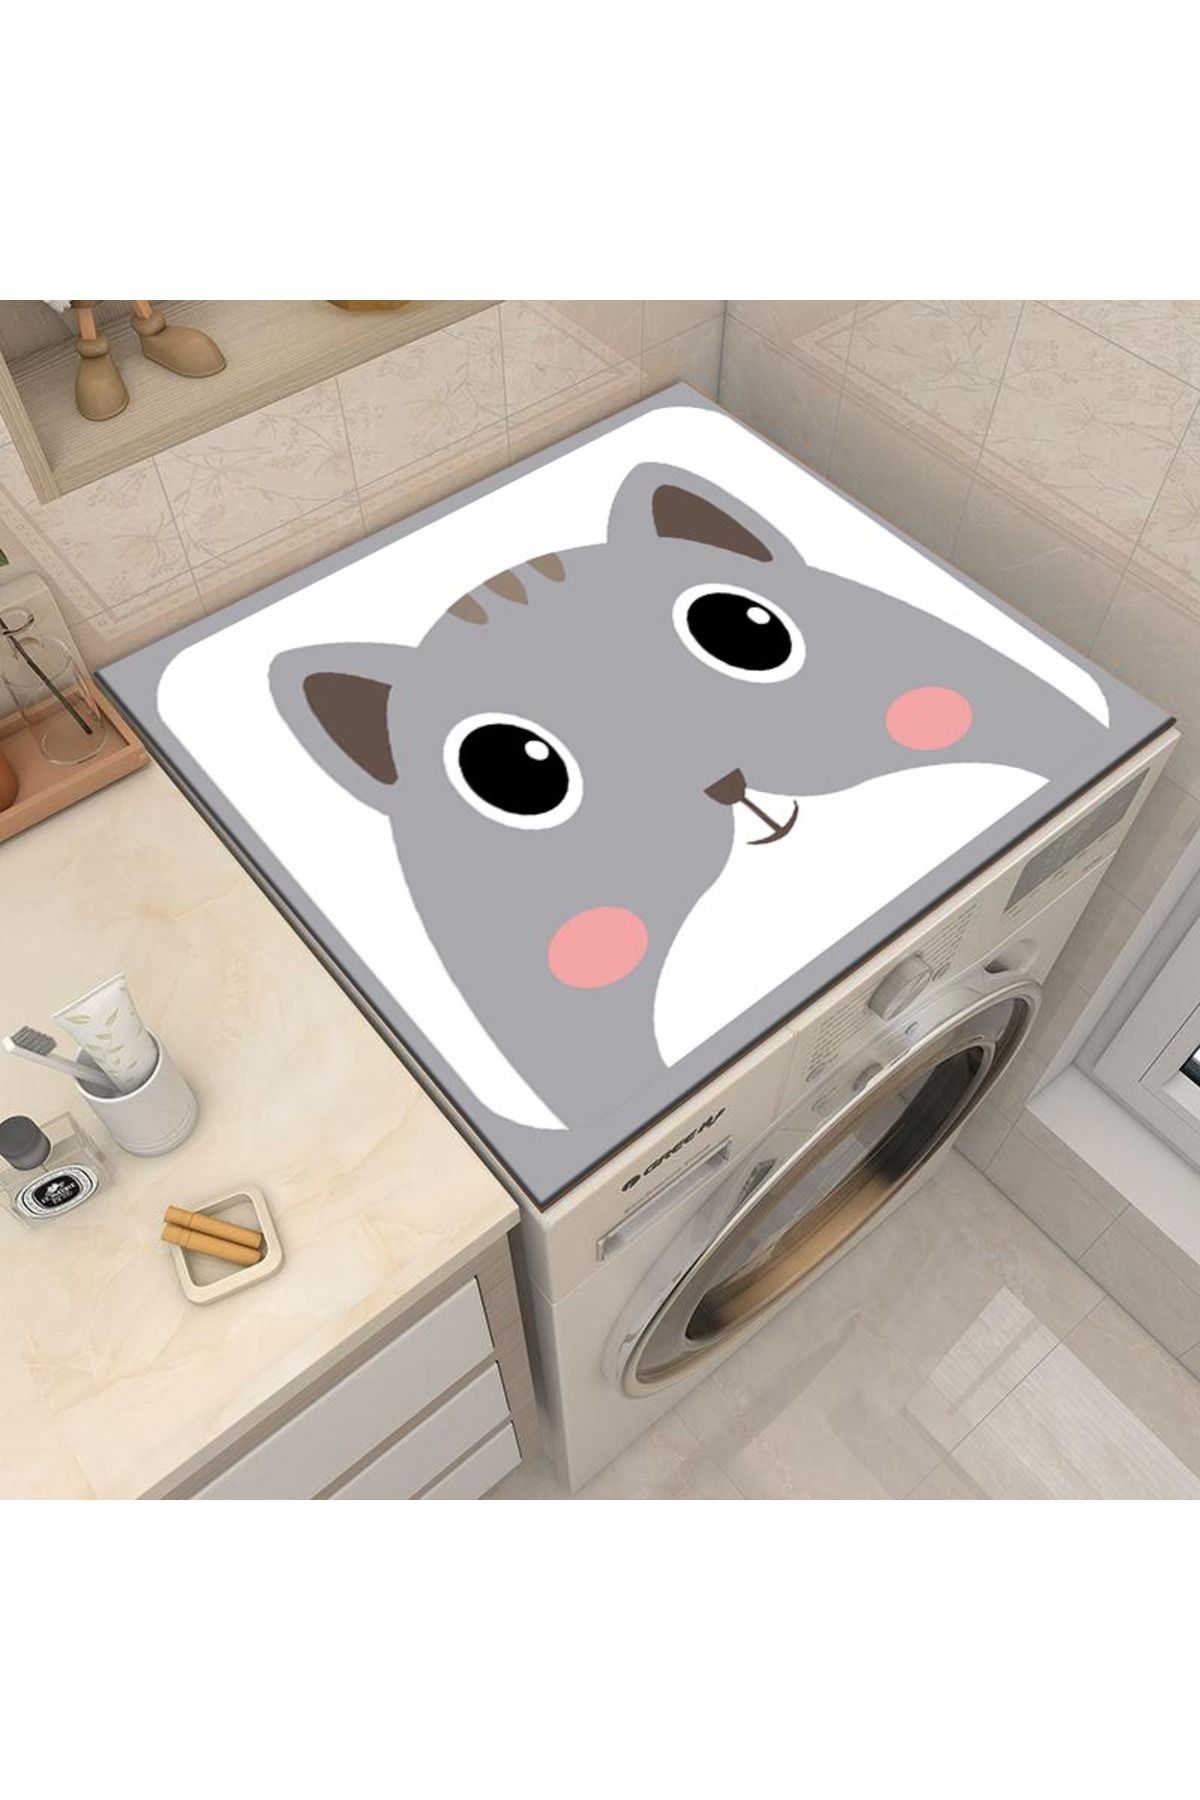 3D ELSE HALI Kedili Kurutmalık Çamaşır Makinesi Örtüsü Koruma Matı Sıvı Geçirmez Kaymaz Yıkanabilir